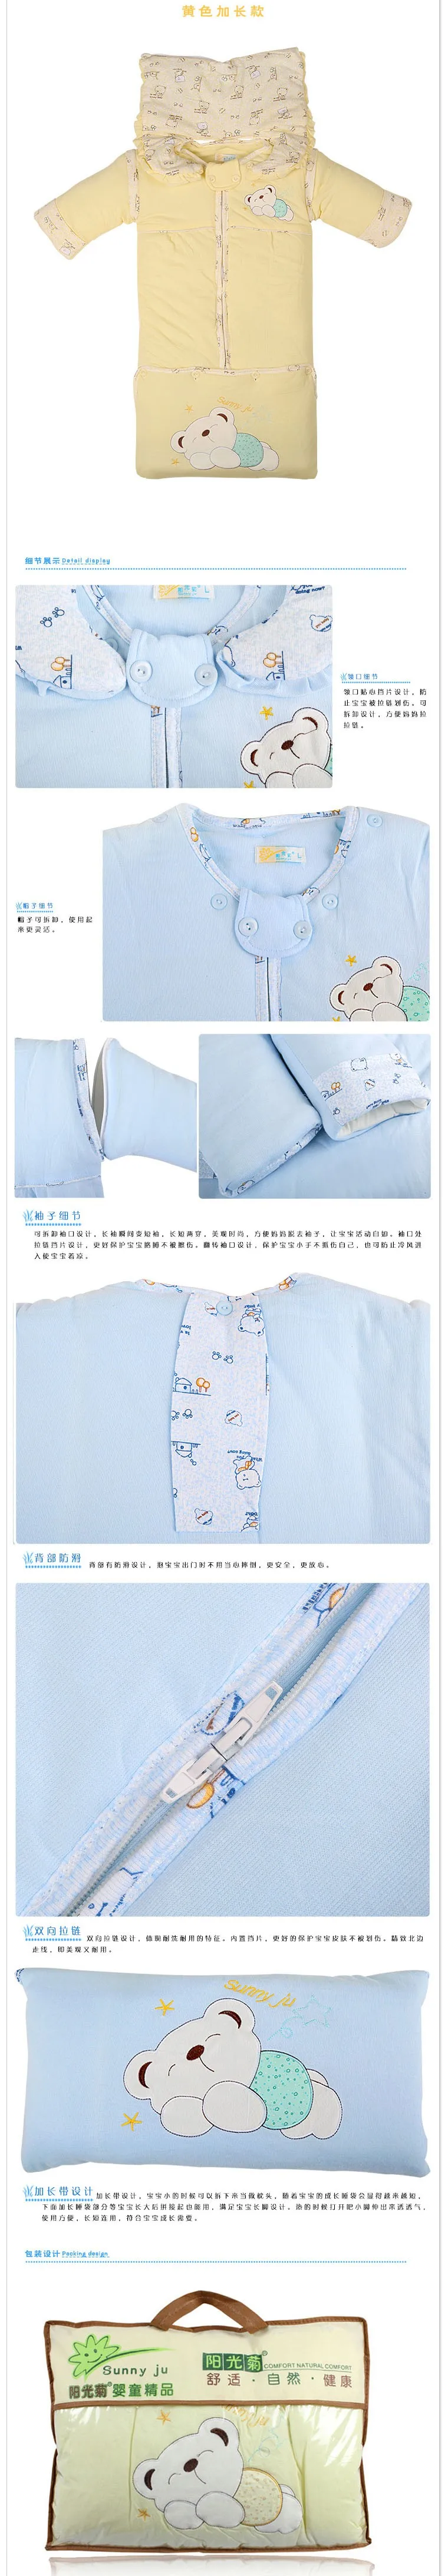 0-2 yearsBaby медведь Dongkuan ребенка спальные мешки удлиняется Removable Storage крышка цилиндра толстые пижамы м нет